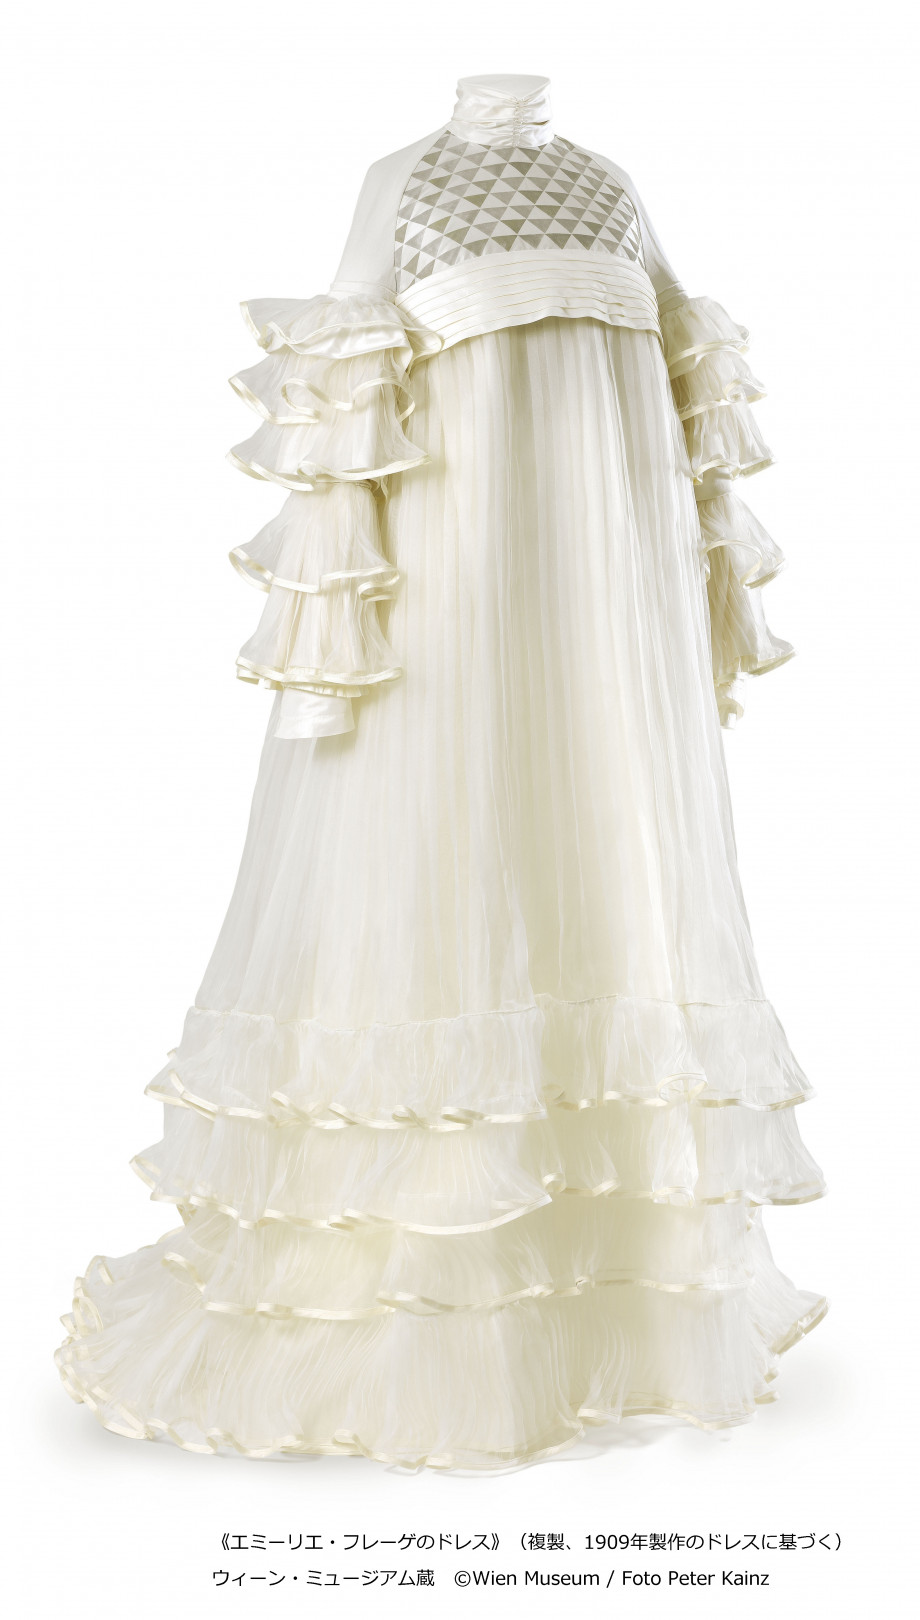 《エミーリエ・フレーゲのドレス》（複製、1909 年製作のドレスに基づく）コットンジャージー、シルクタフタ、オーガンザ 前丈：150cm、後丈：170cm、袖丈：63cm ウィーン・ミュージアム蔵 ©Wien Museum / Foto Peter Kainz